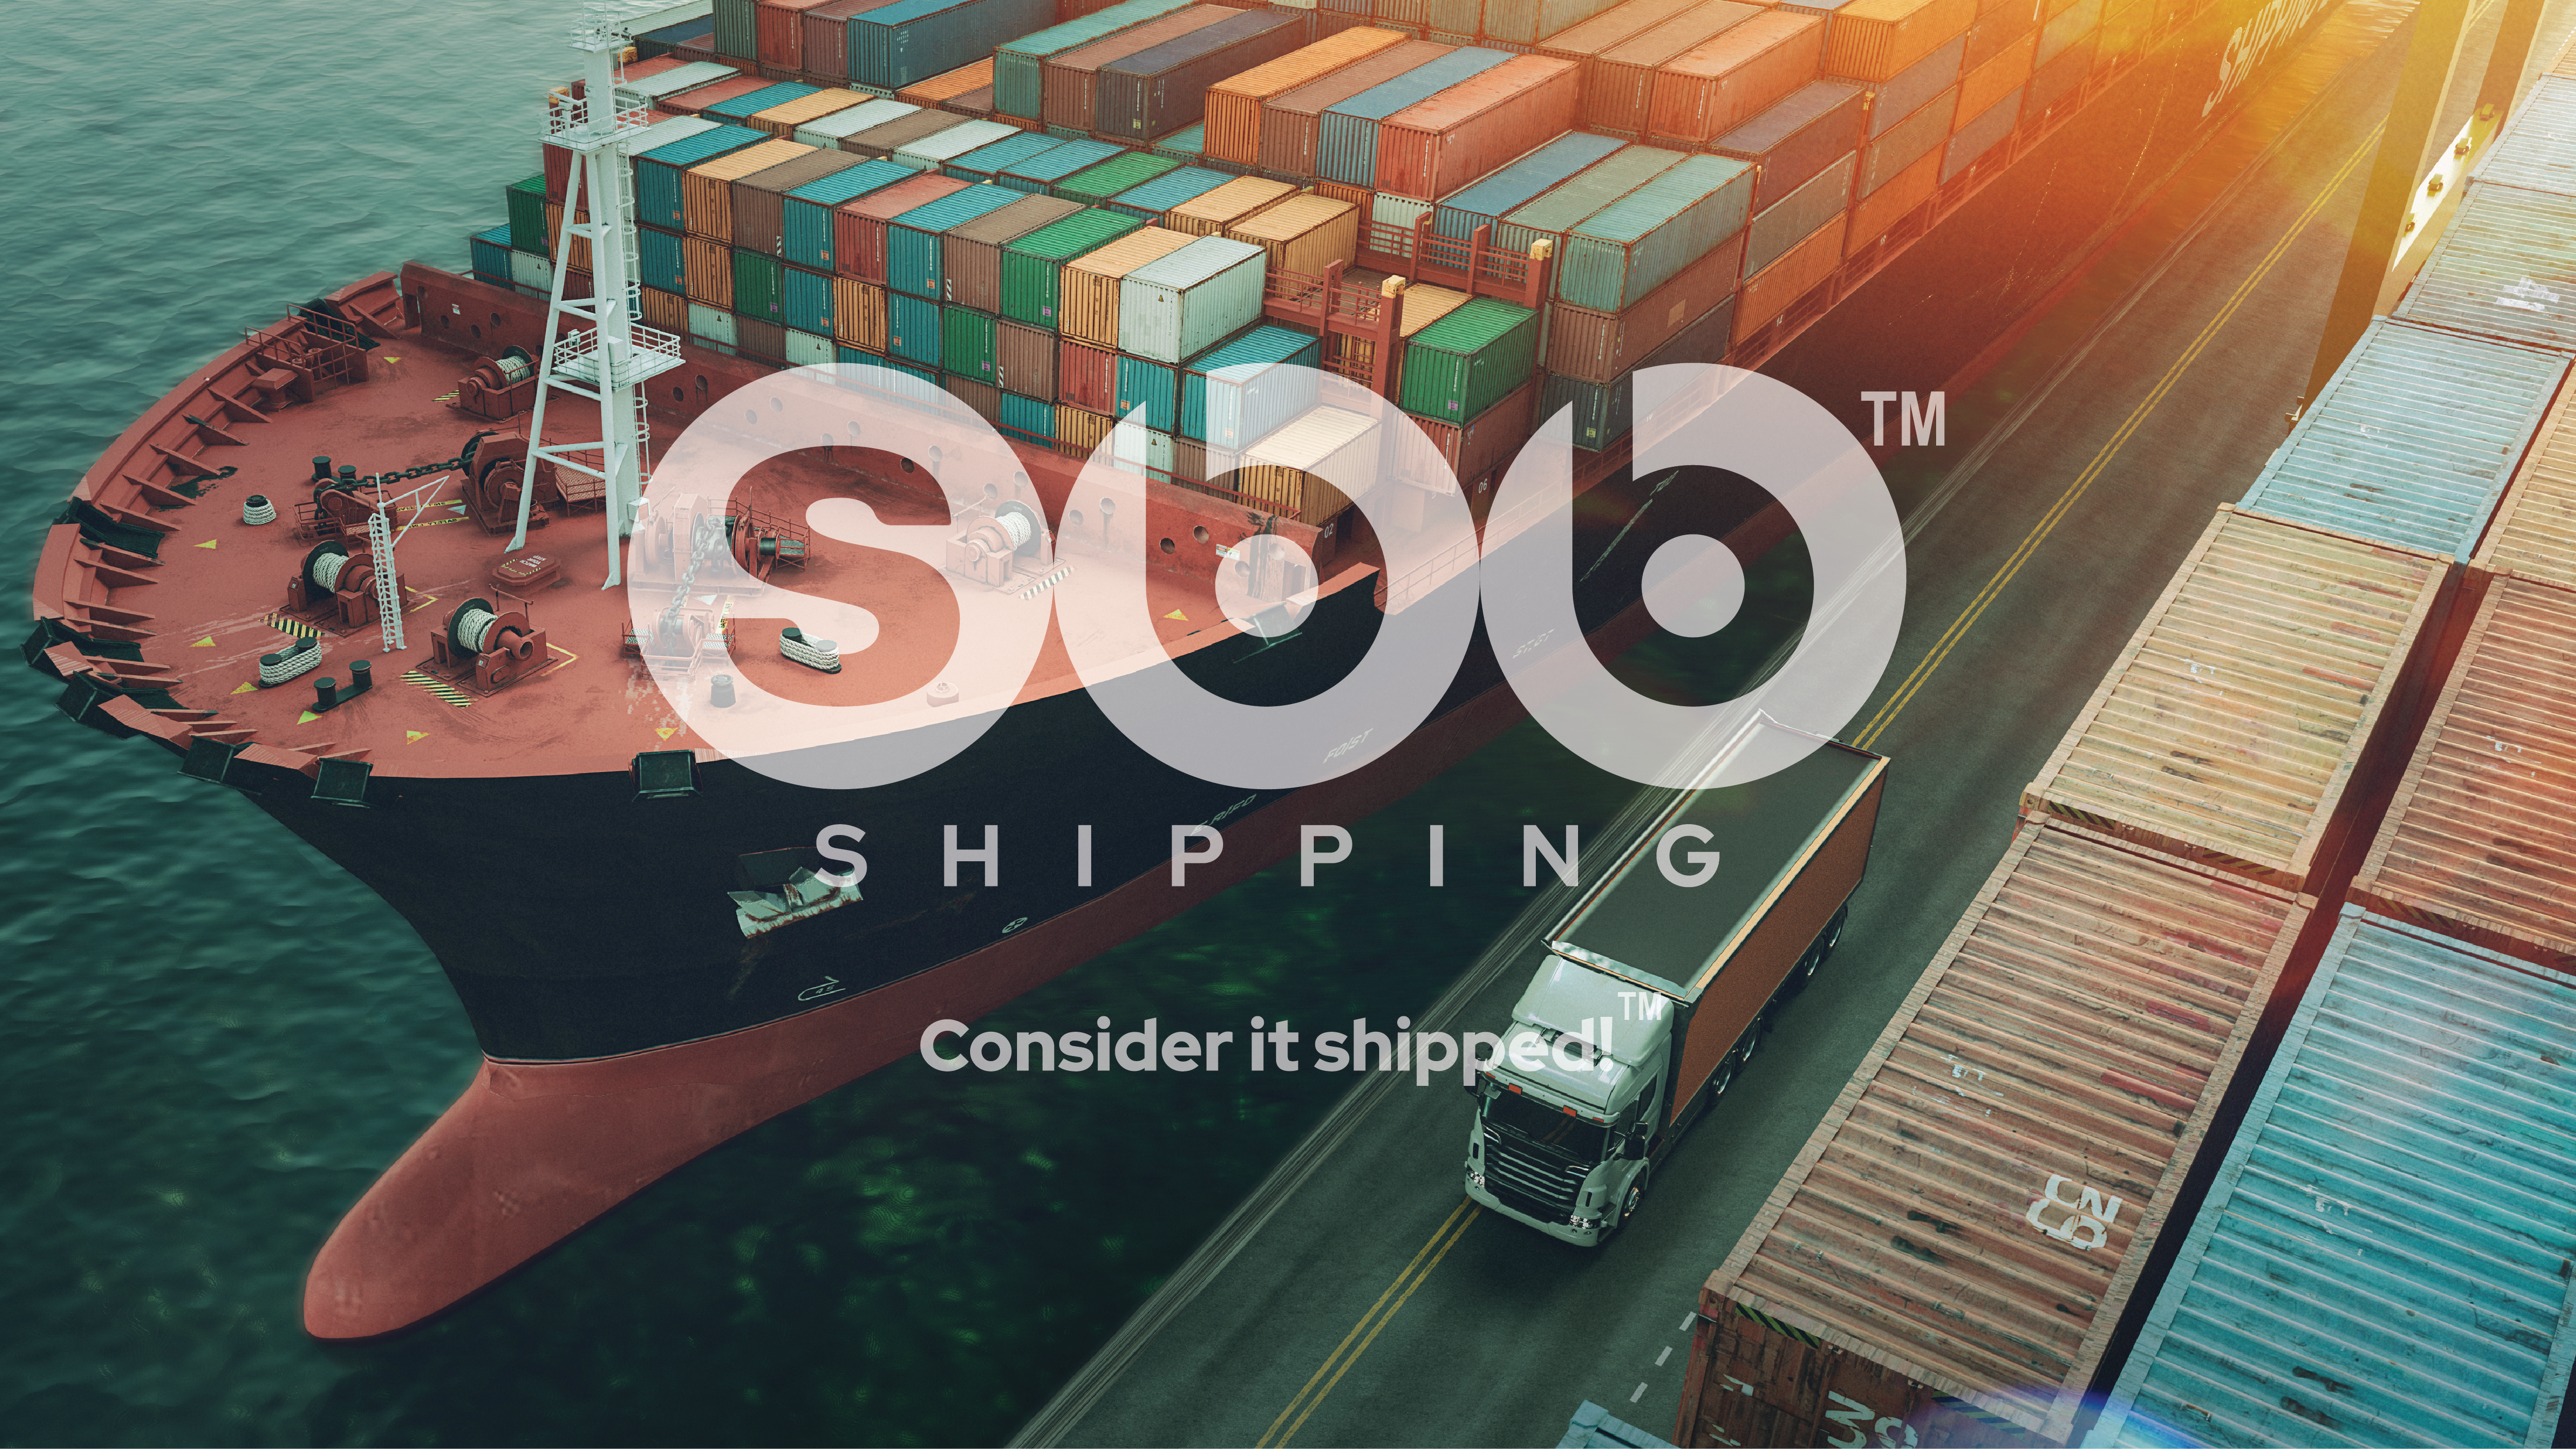 SBB Shipping USA Blog Post Cover